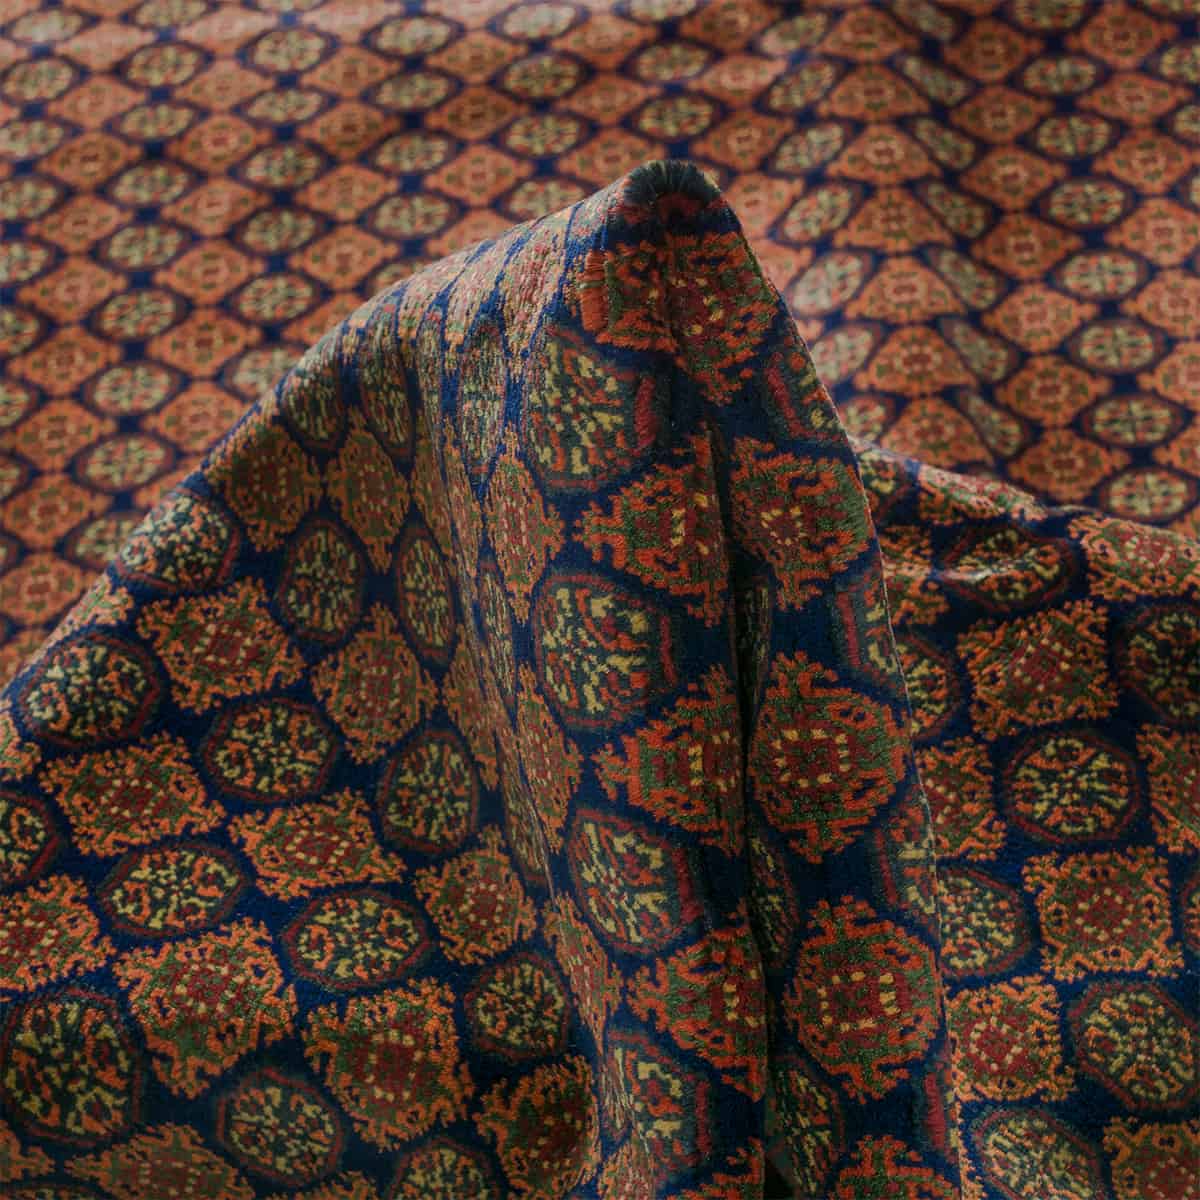  אפגני באשיר 00 צבעוני 202x298 | השטיח האדום 